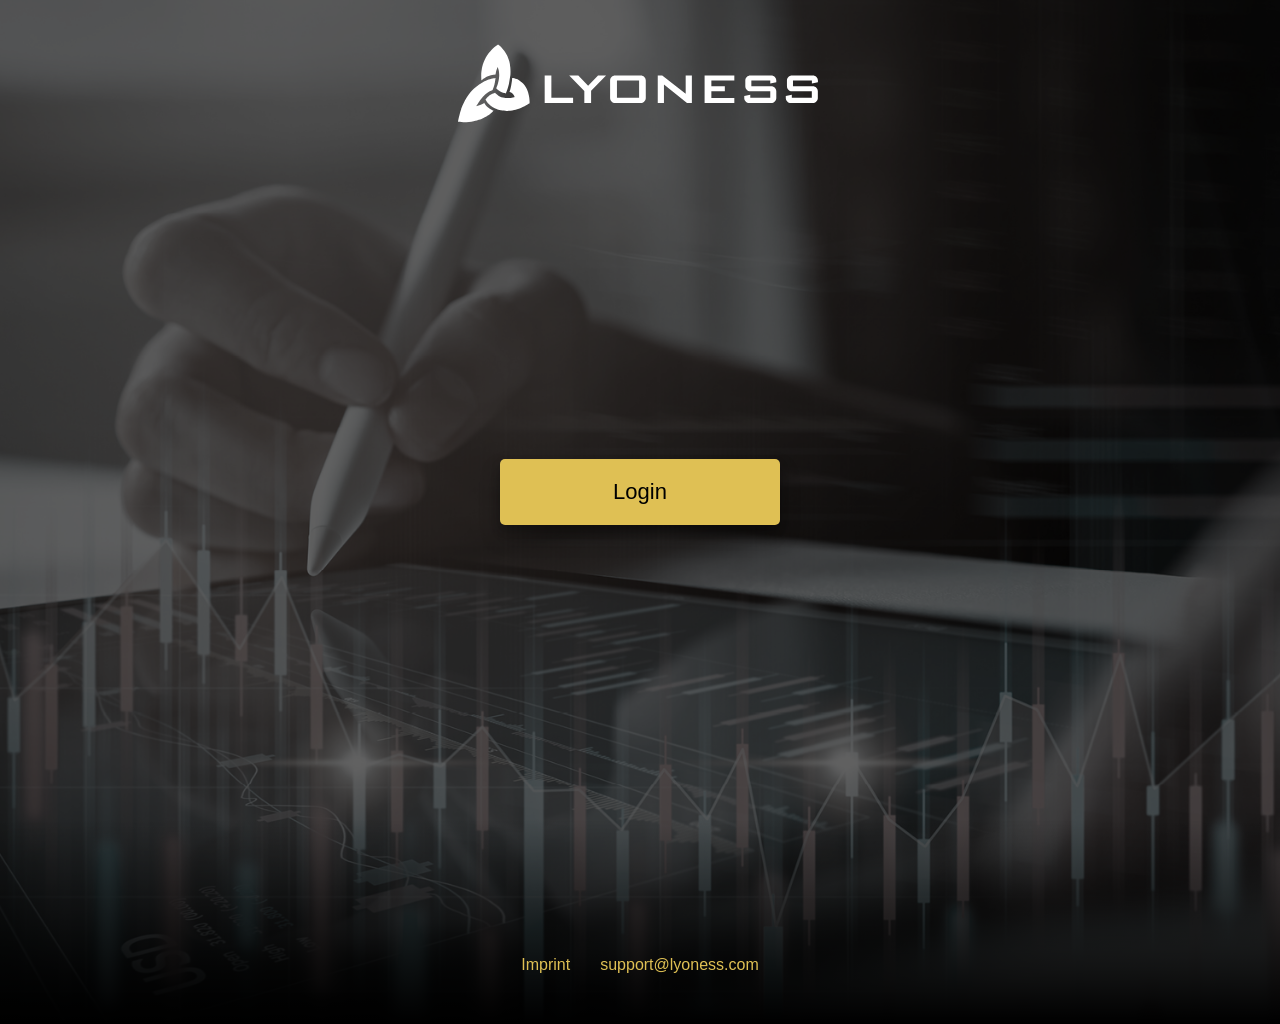 lyoness.net